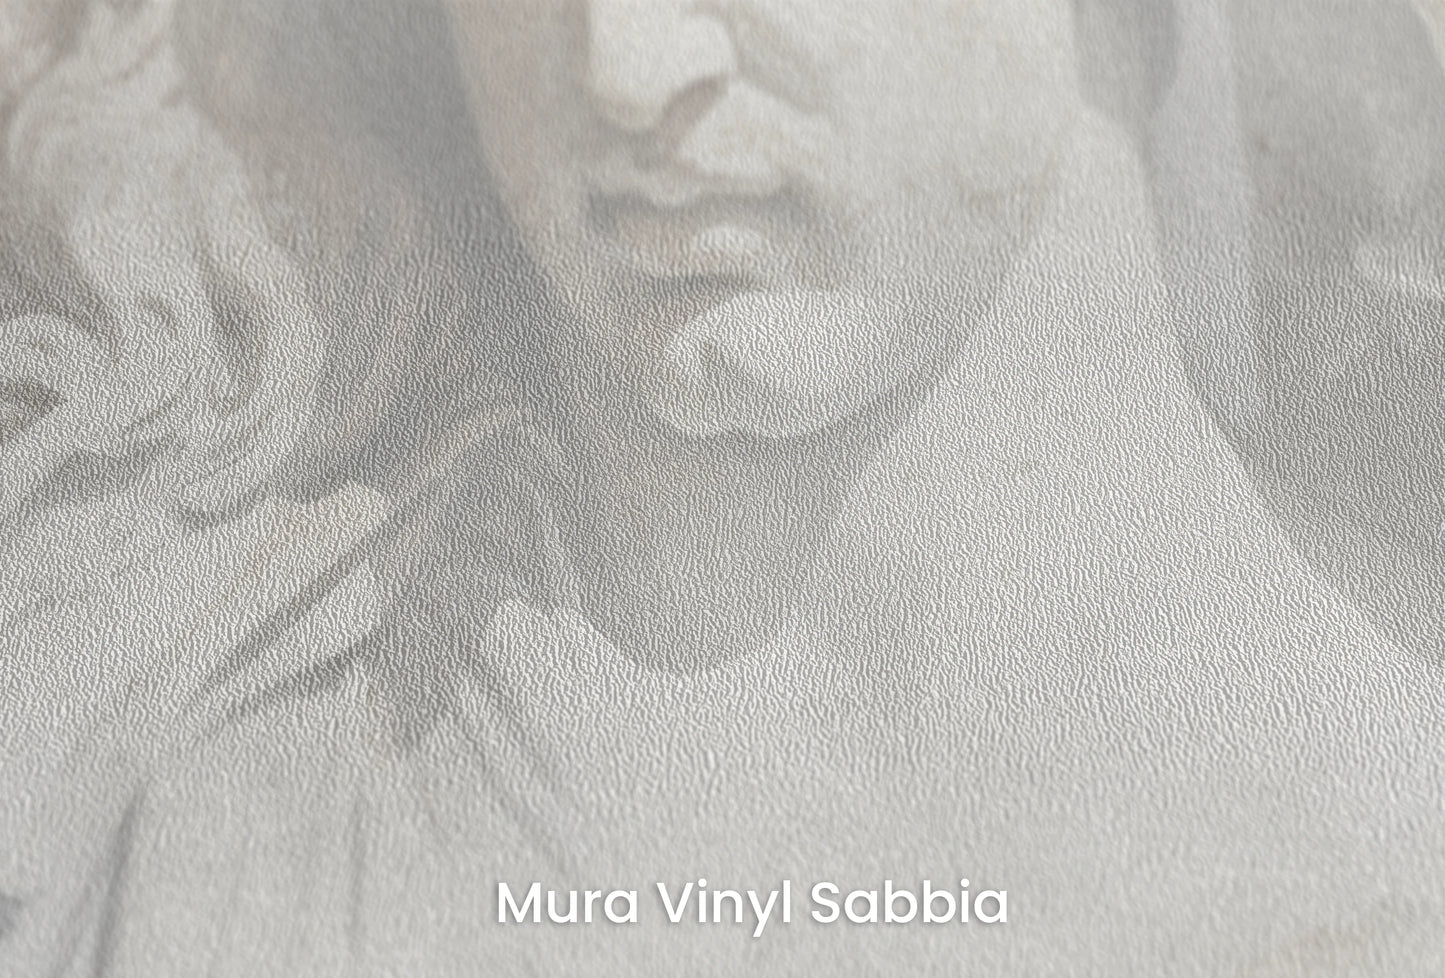 Zbliżenie na artystyczną fototapetę o nazwie The Elysian Trio na podłożu Mura Vinyl Sabbia struktura grubego ziarna piasku.